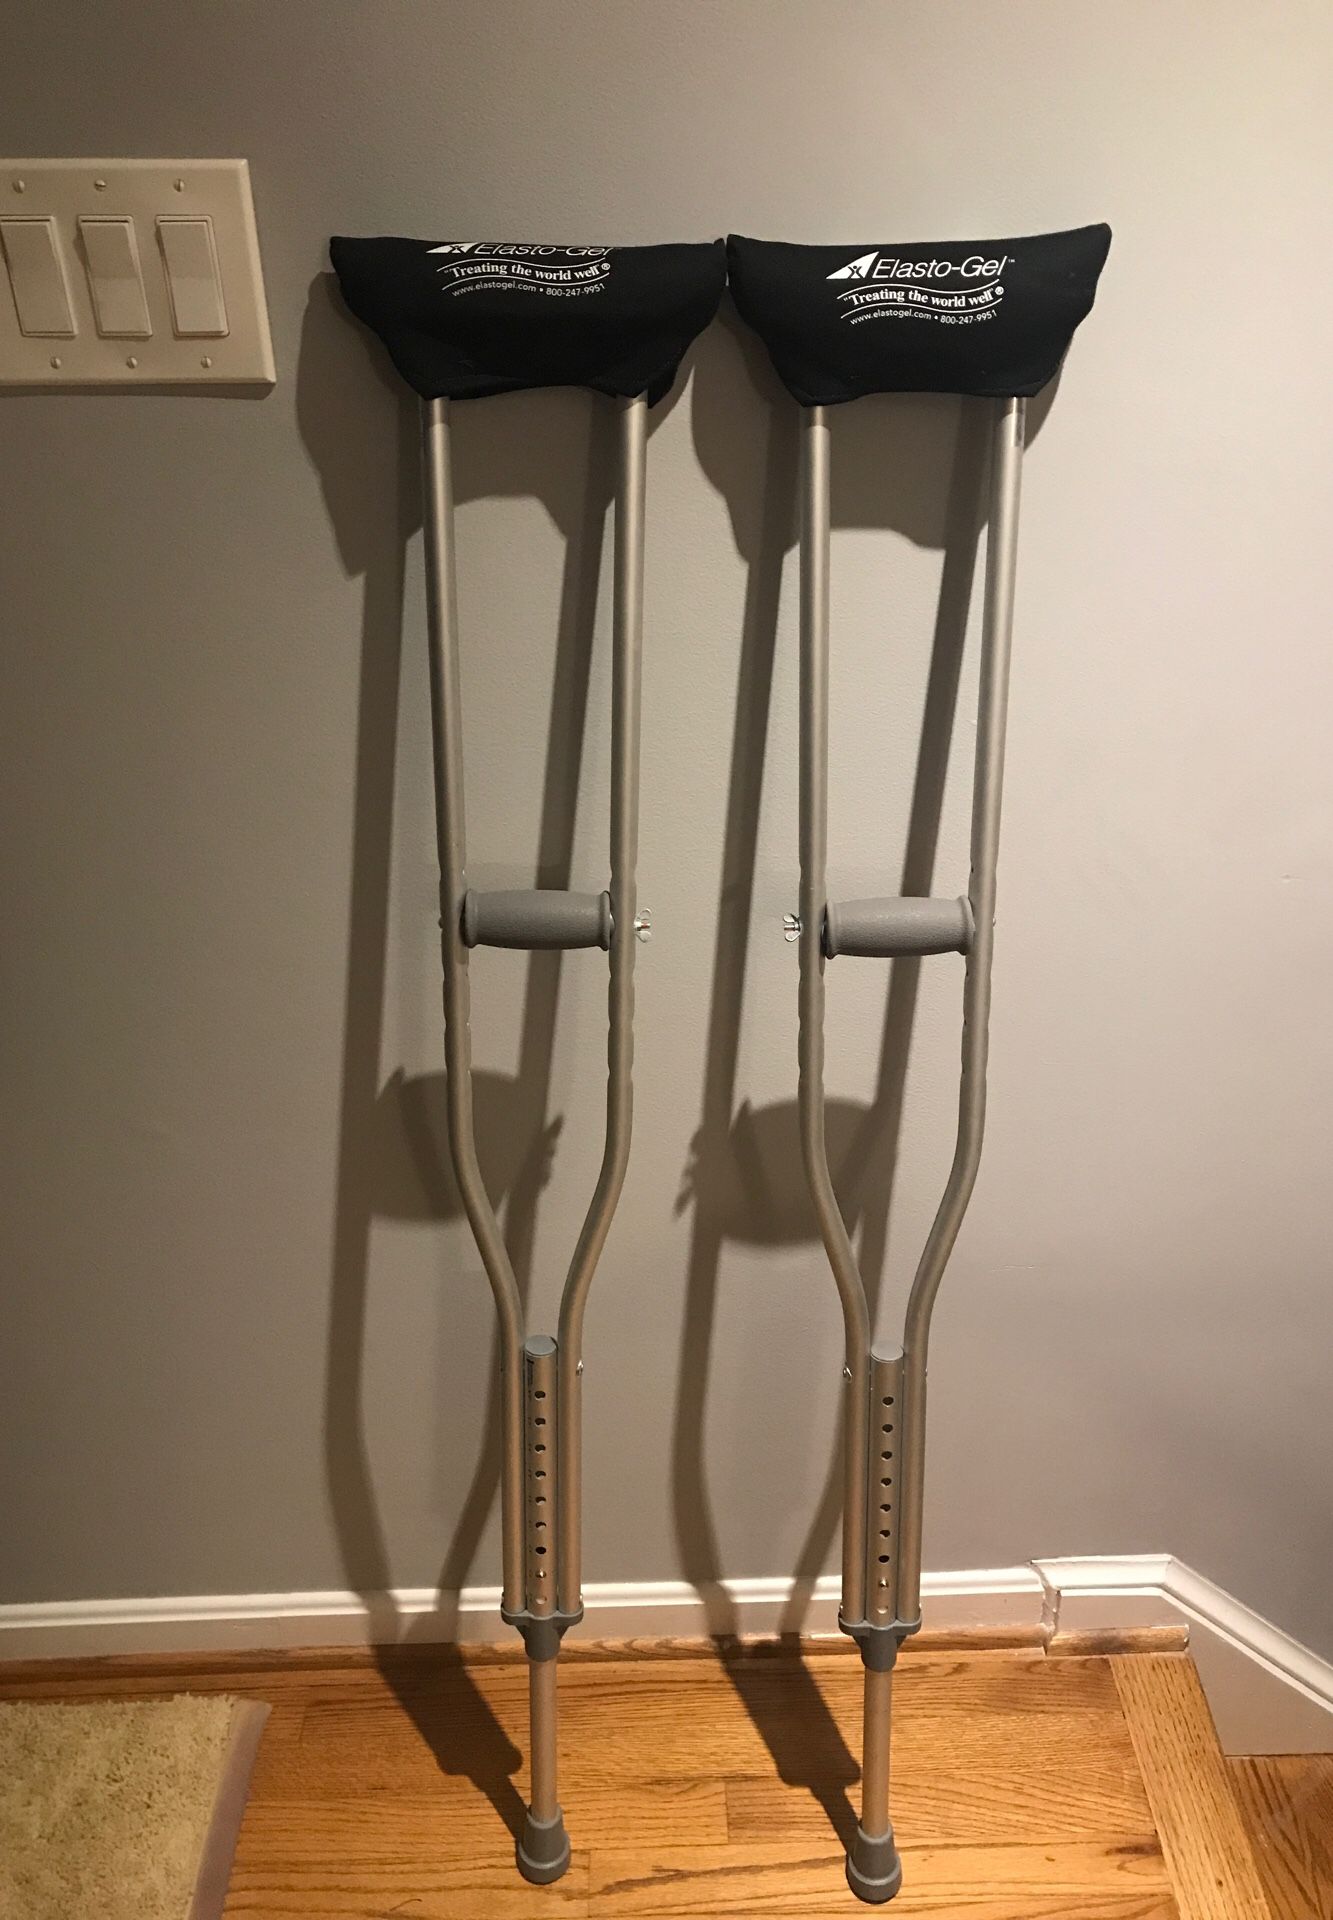 Aluminum Crutches: 5’2-5’10